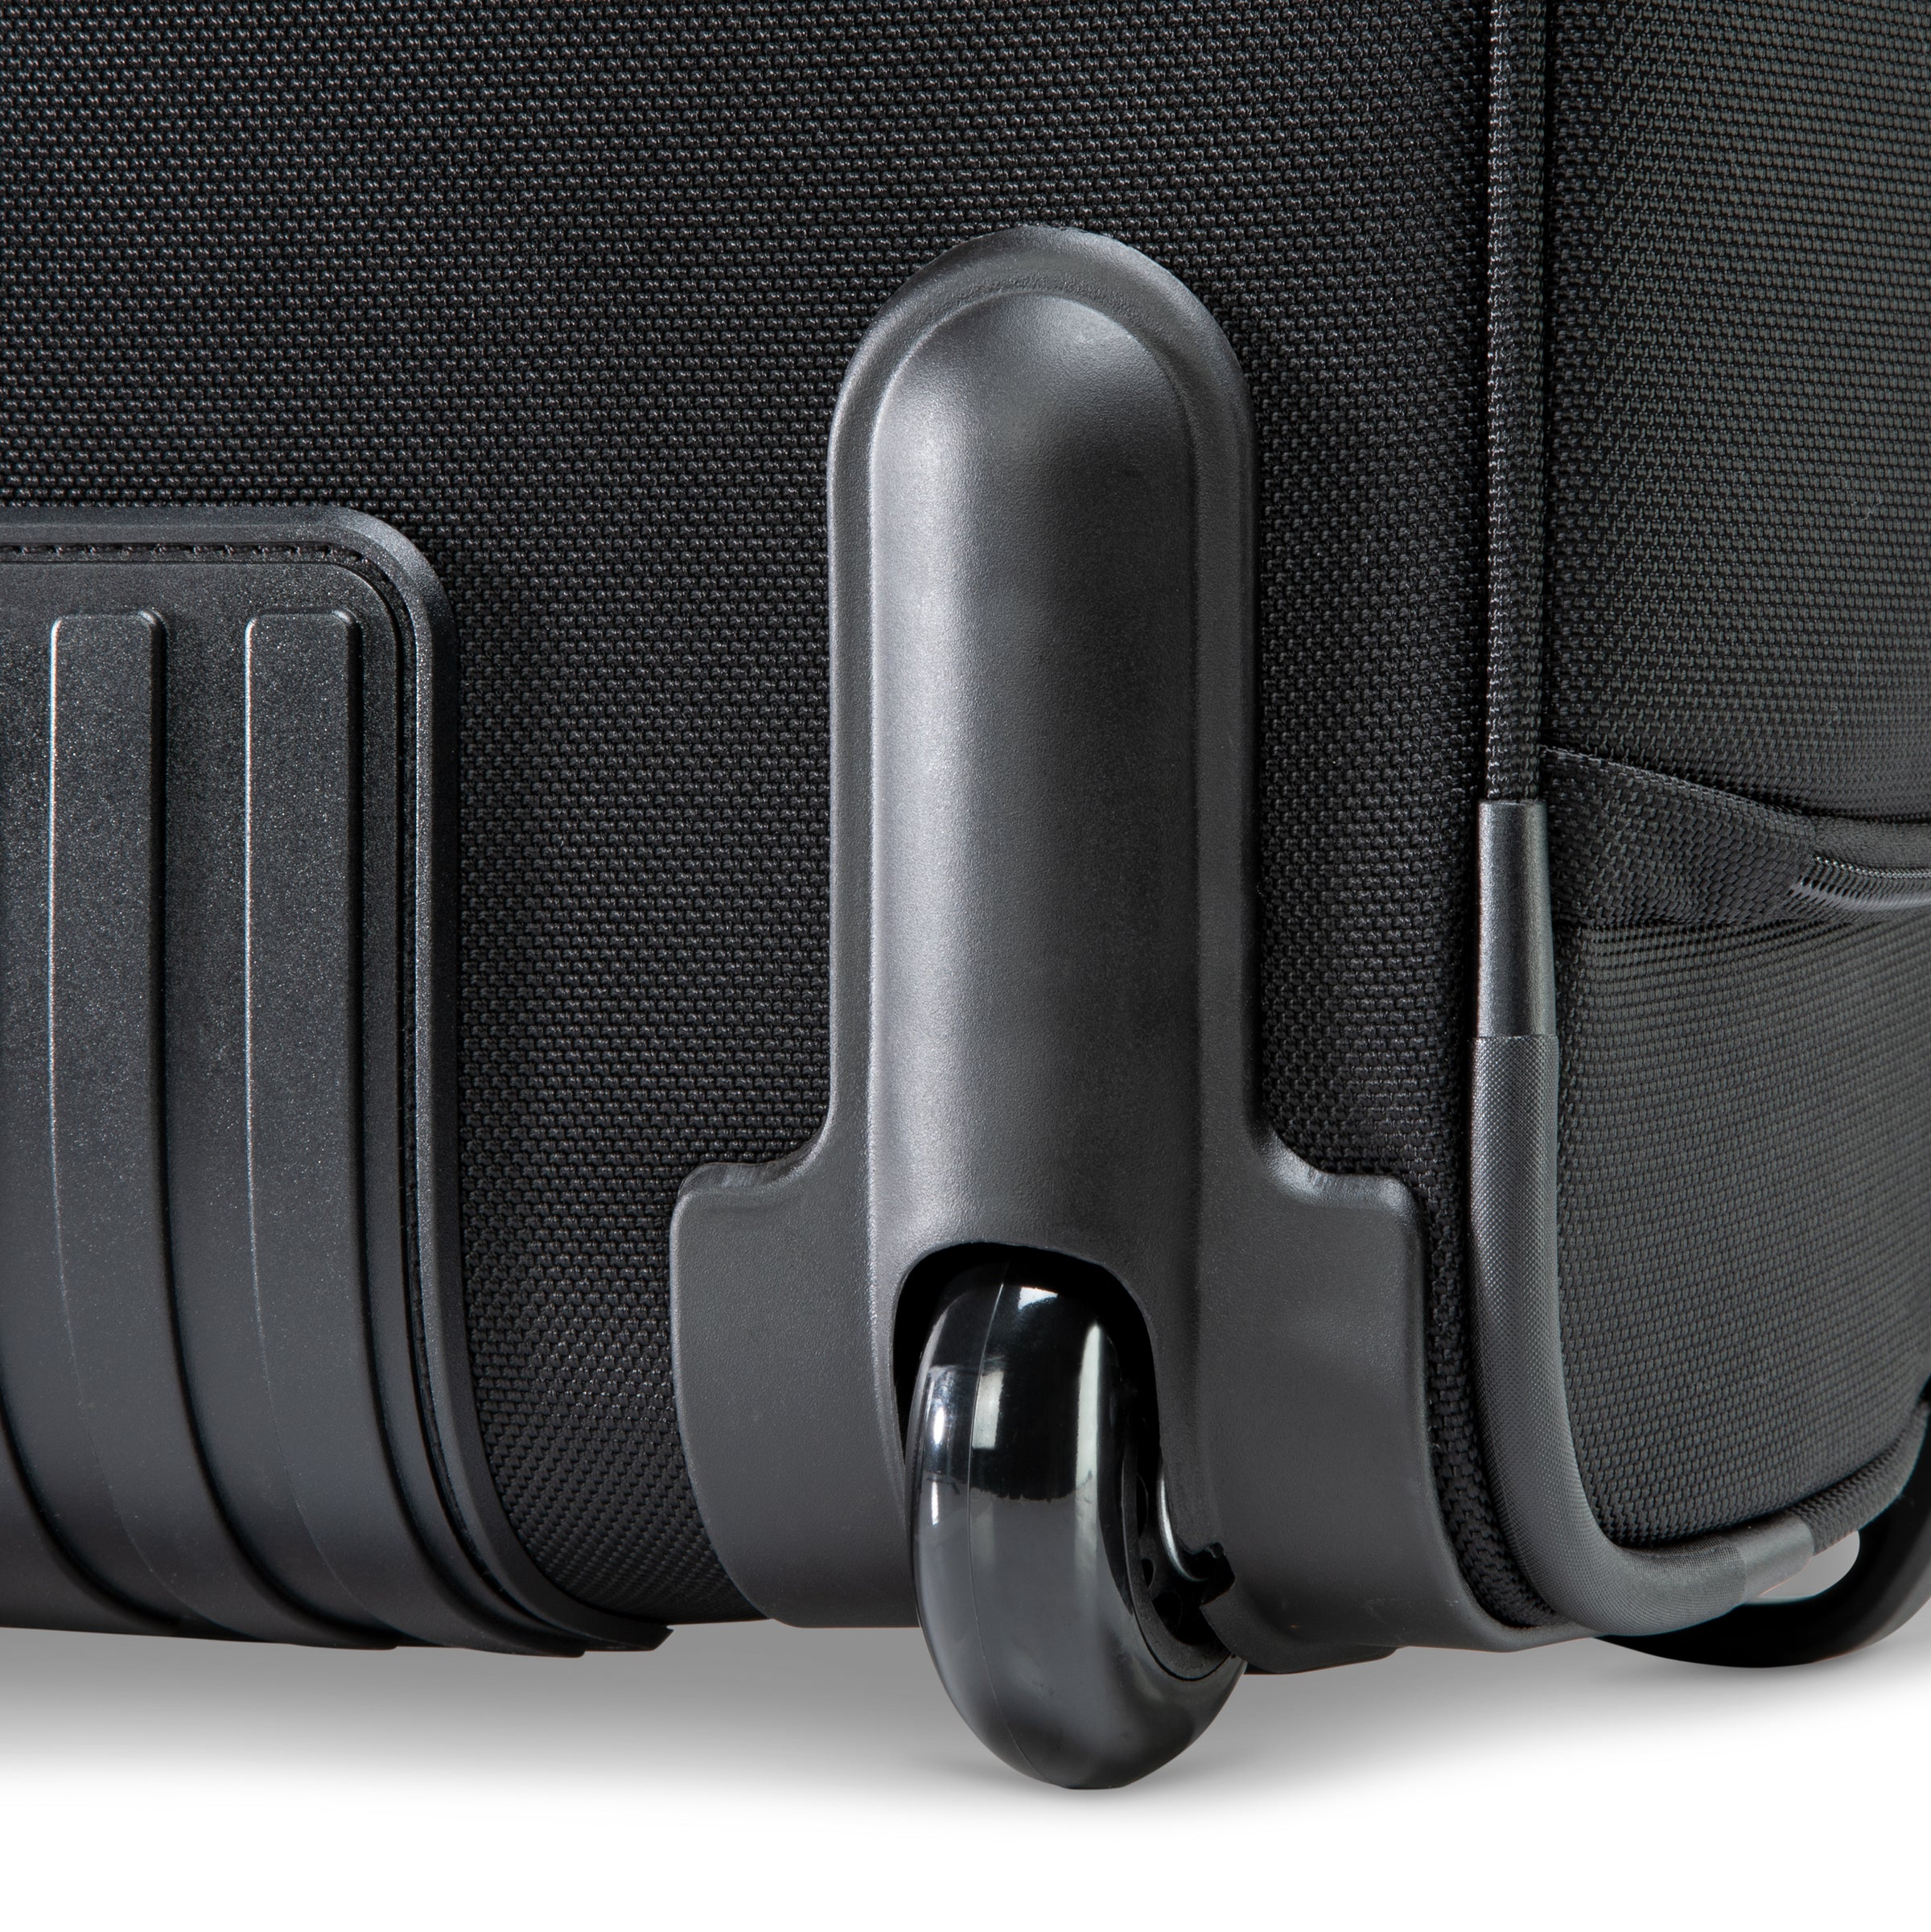 Flight Essentials Softside Wheel-A-Board Bag